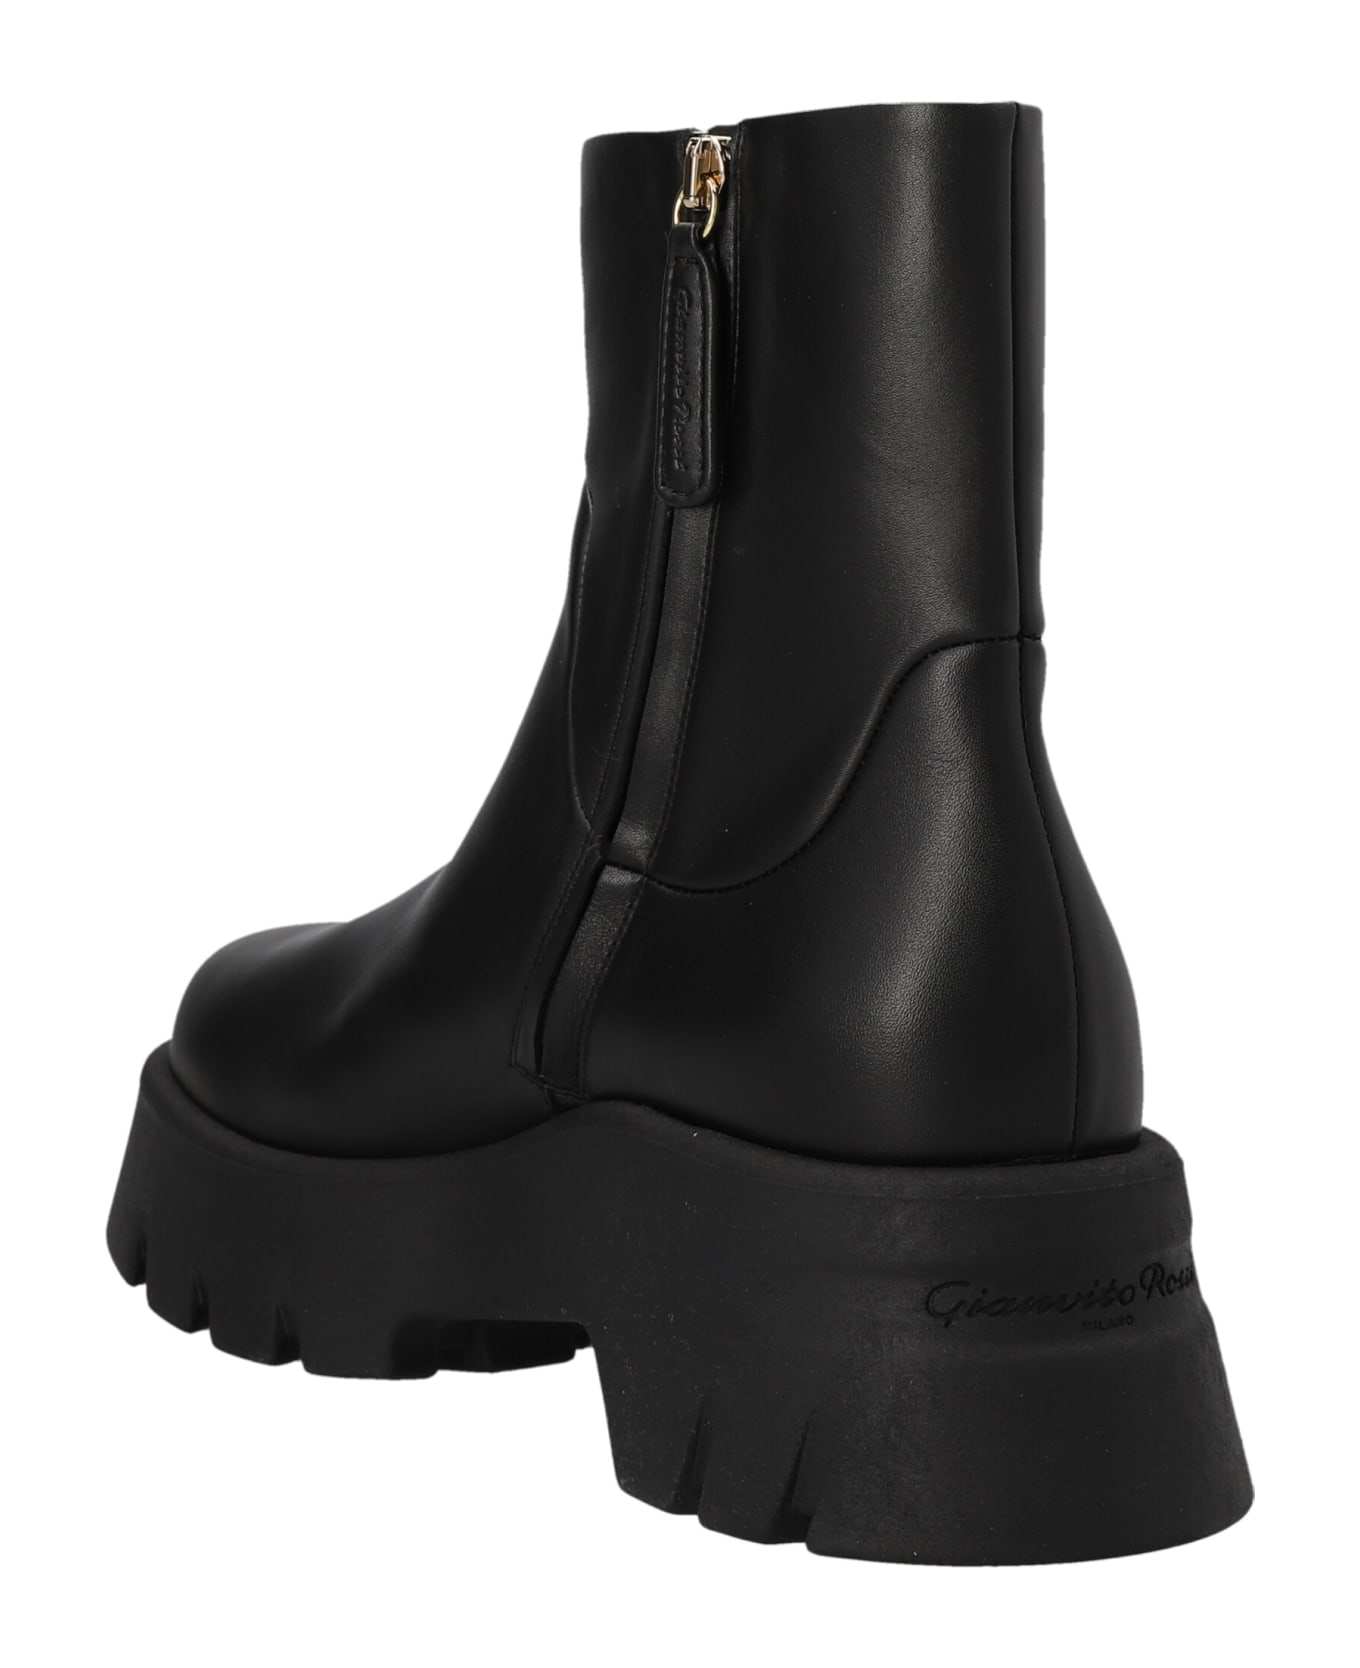 Gianvito Rossi Lug Sole Ankle Boots - Vitello Glove Black ブーツ